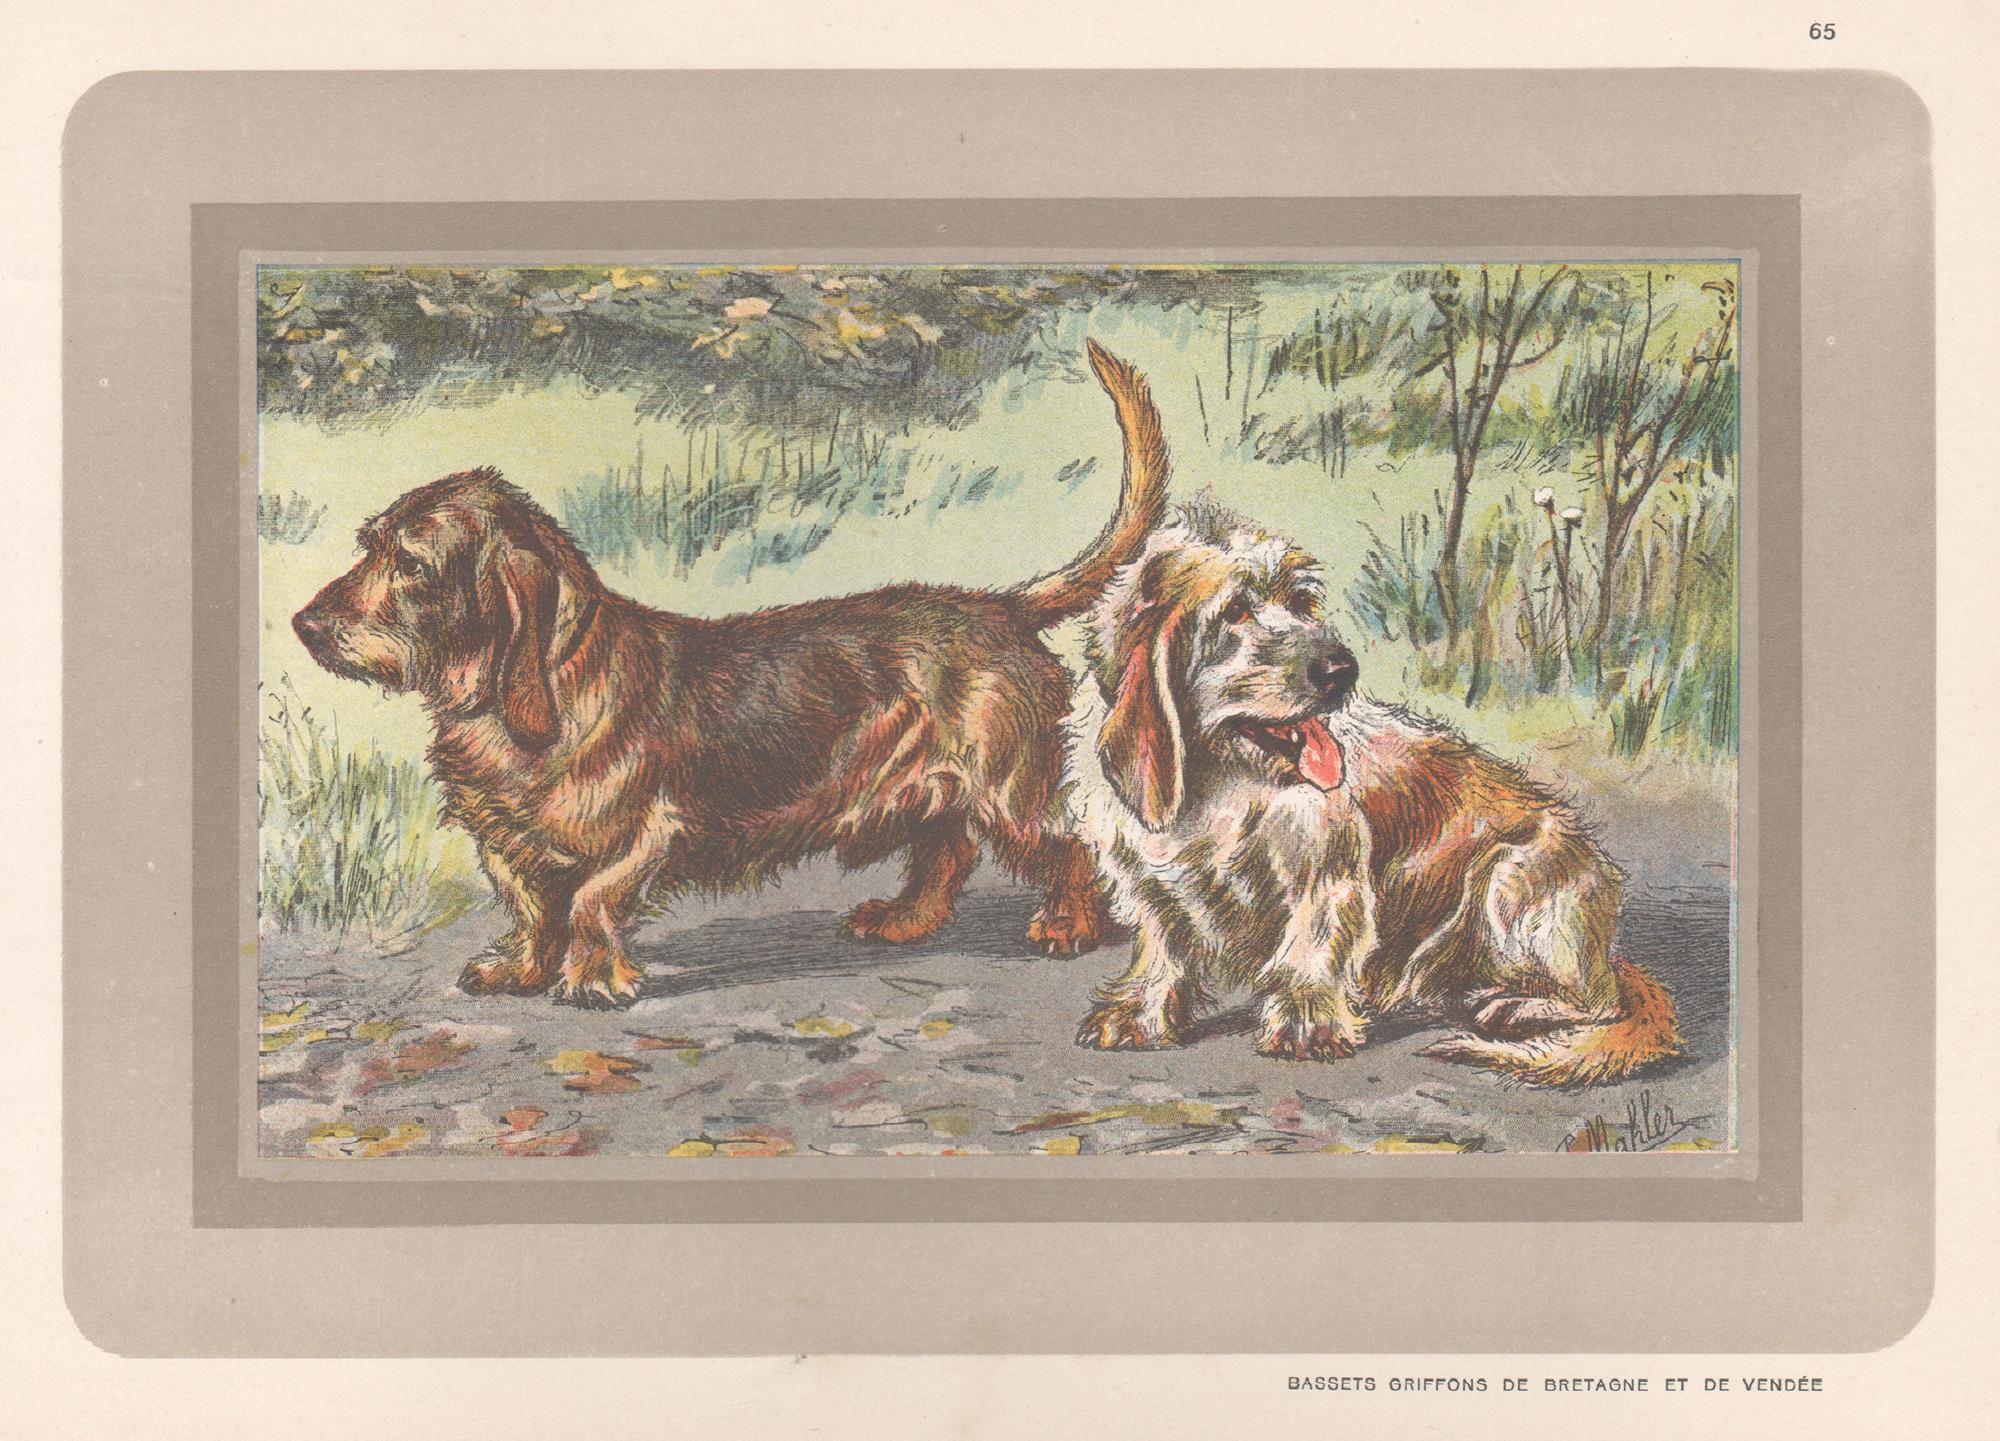 Animal Print P. Mahler - Bassets Griffons, impression chromolithographie d'un chien de chasse français, années 1930